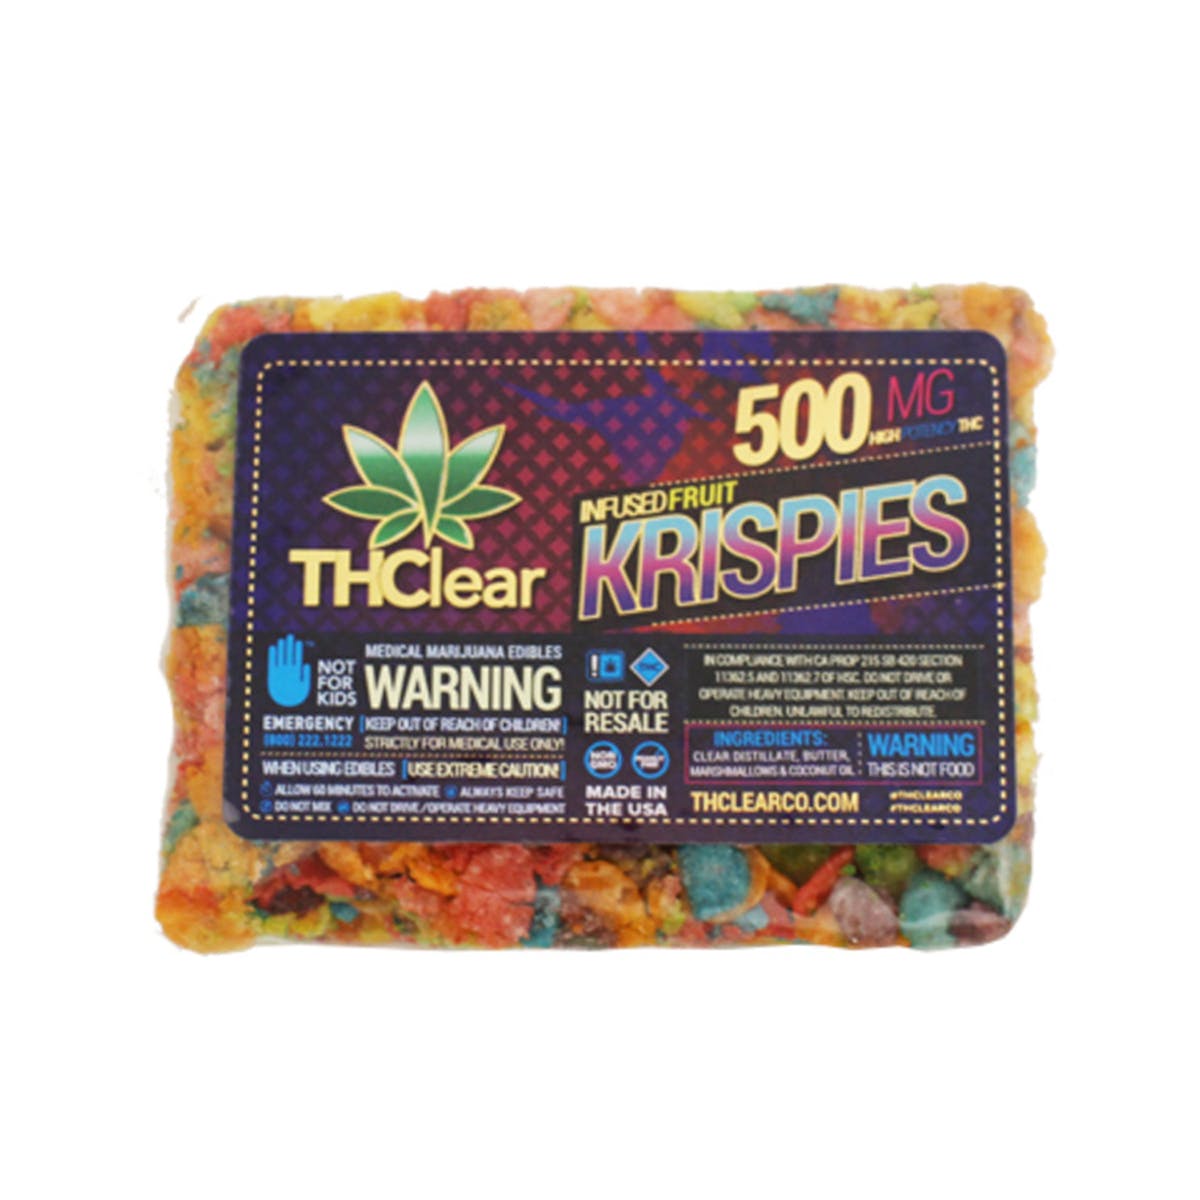 marijuana-dispensaries-revo-in-pasadena-fruit-krispies-cereal-bar-500mg